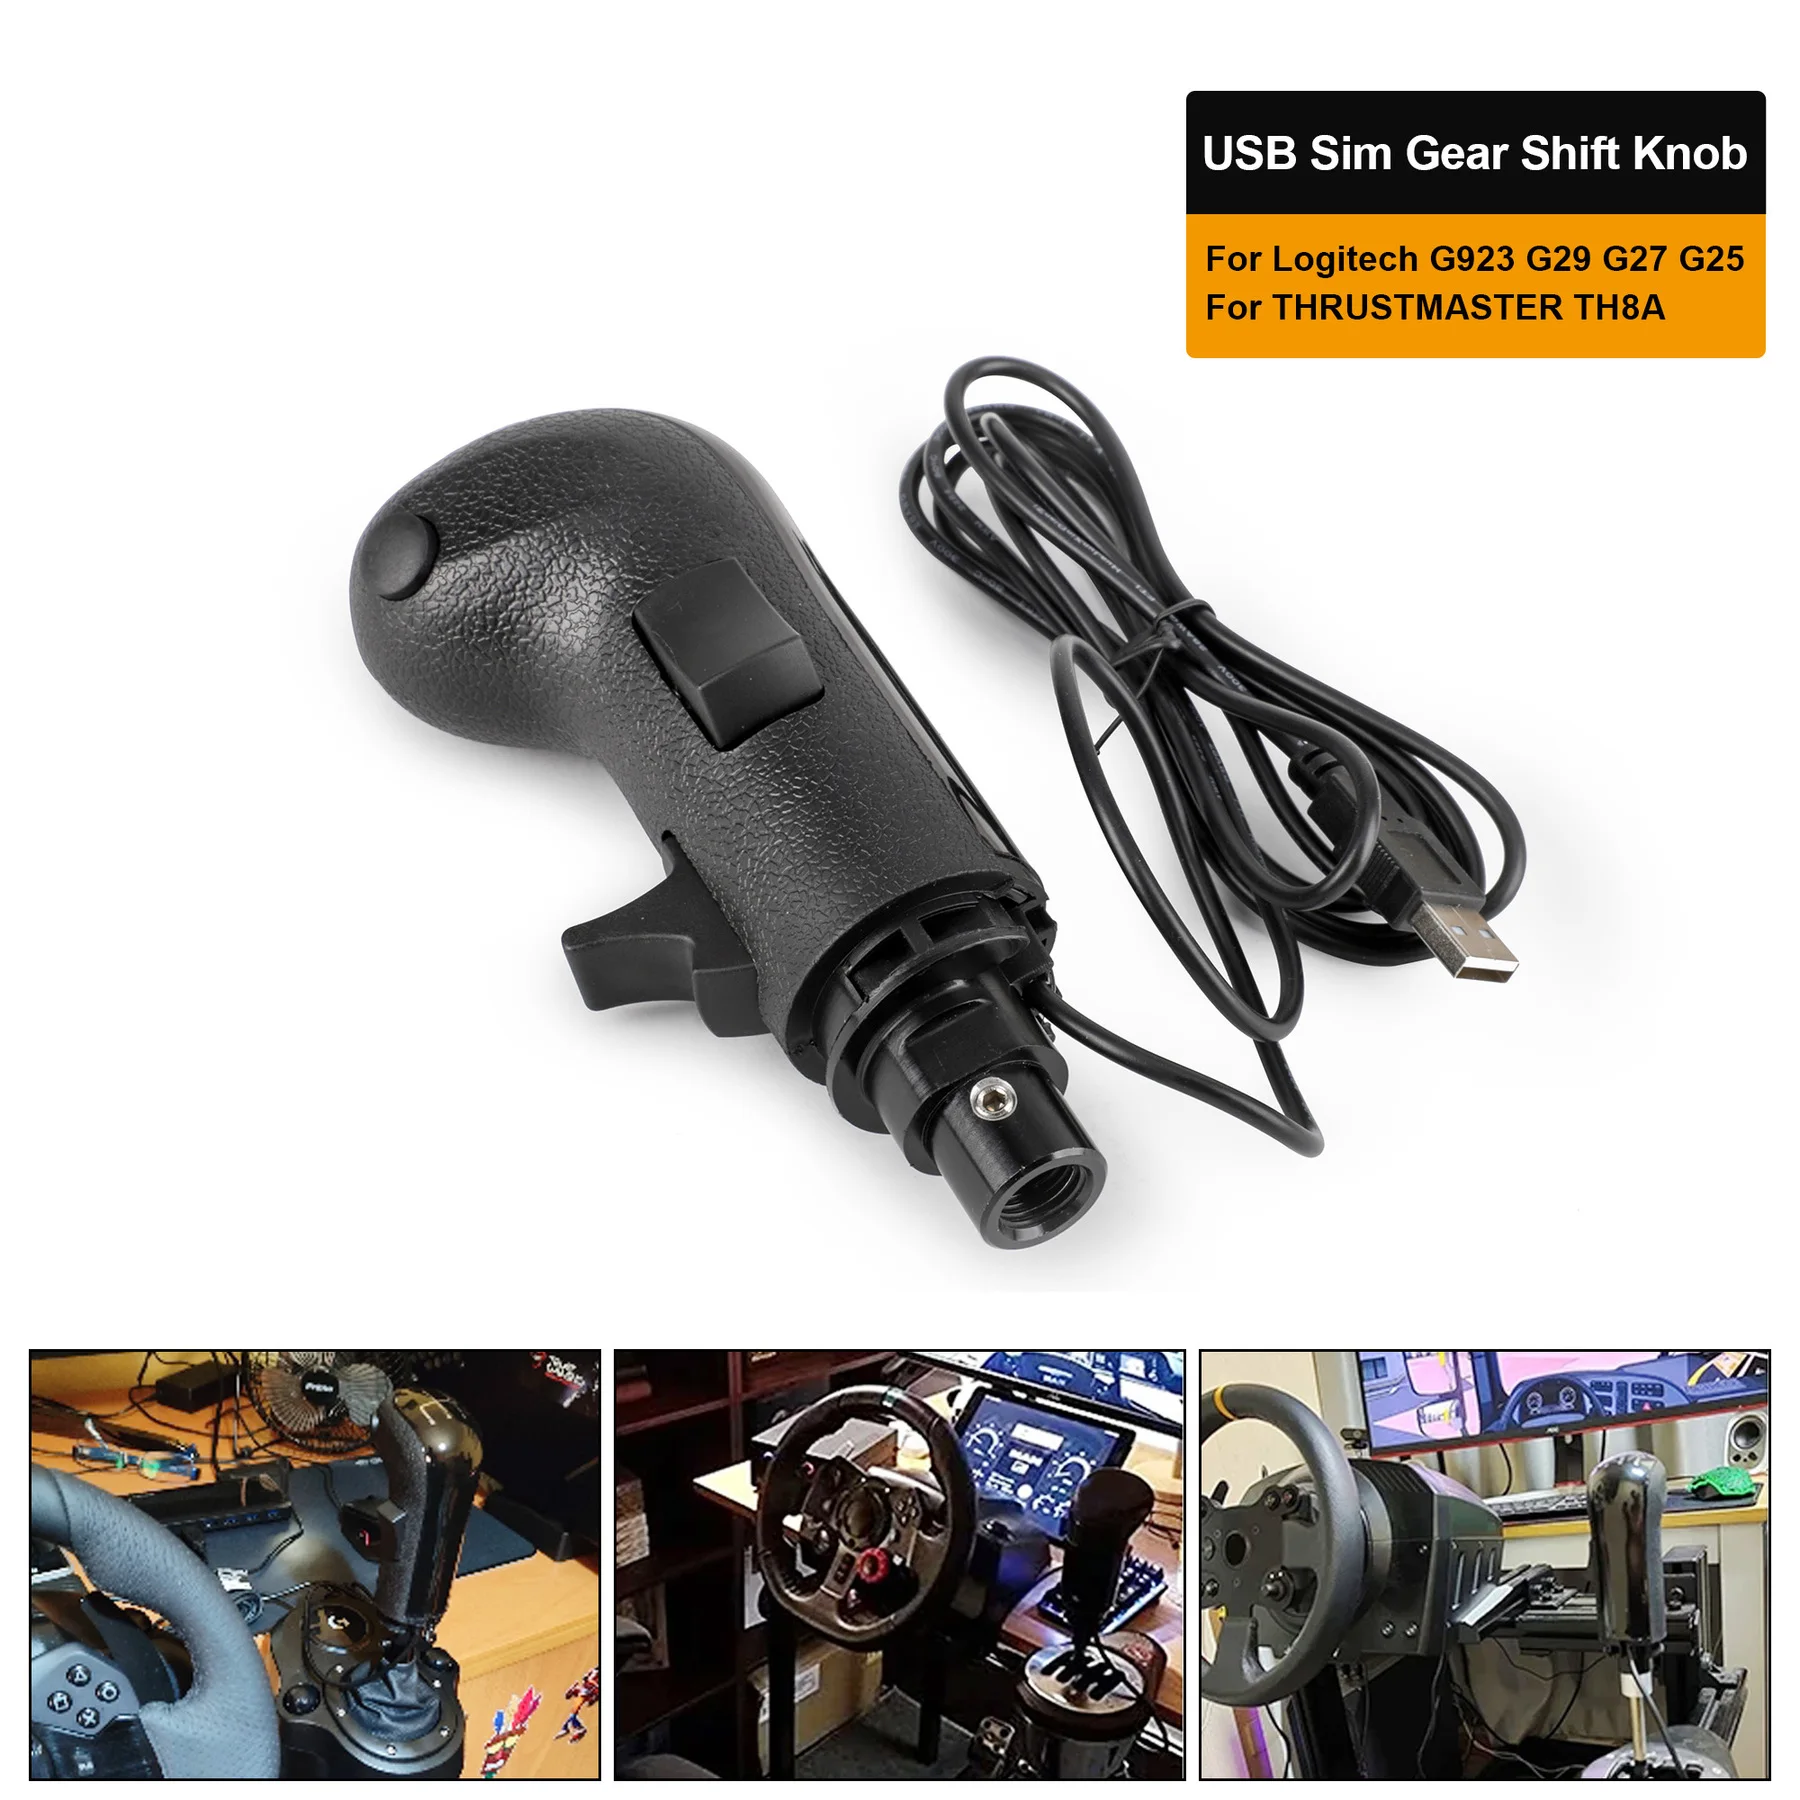 High Low Gear Simulator Shifter Knob, PC USB, Logitech G923, G29, G27, G25,  TH8A, ATS ETS2, Jogos de caminhão, HB043 - AliExpress